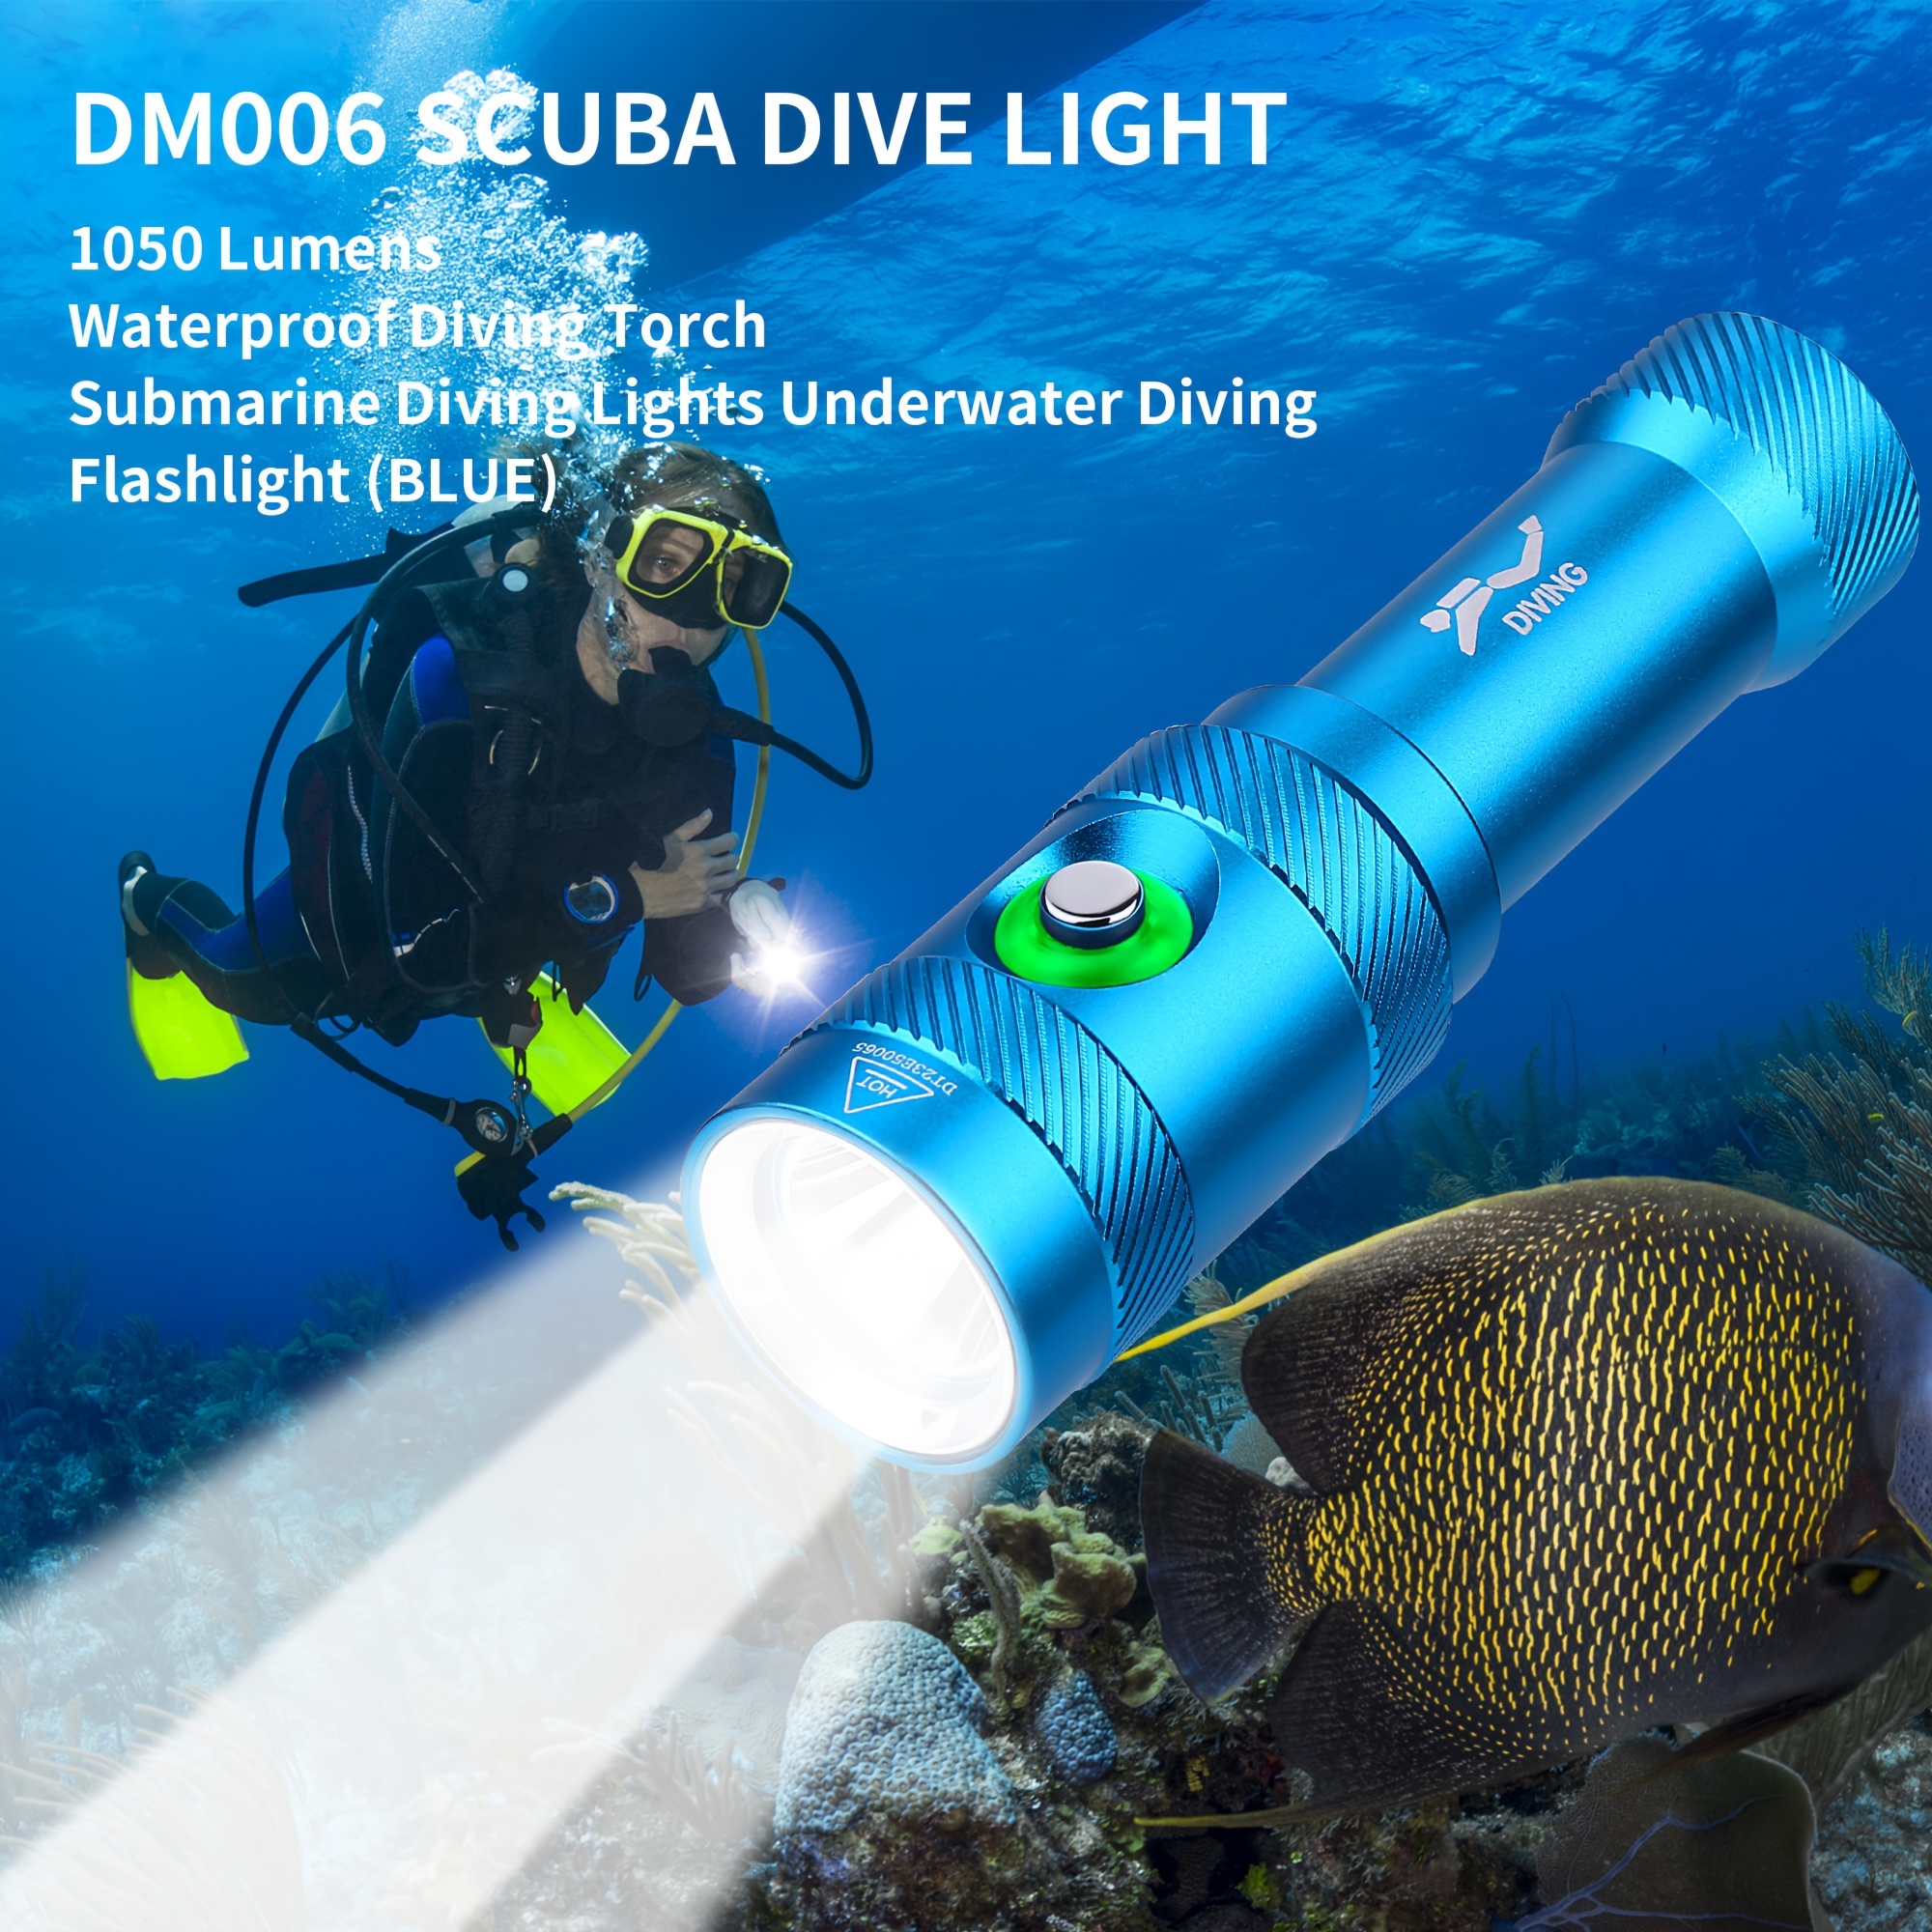 Waterproof Diving